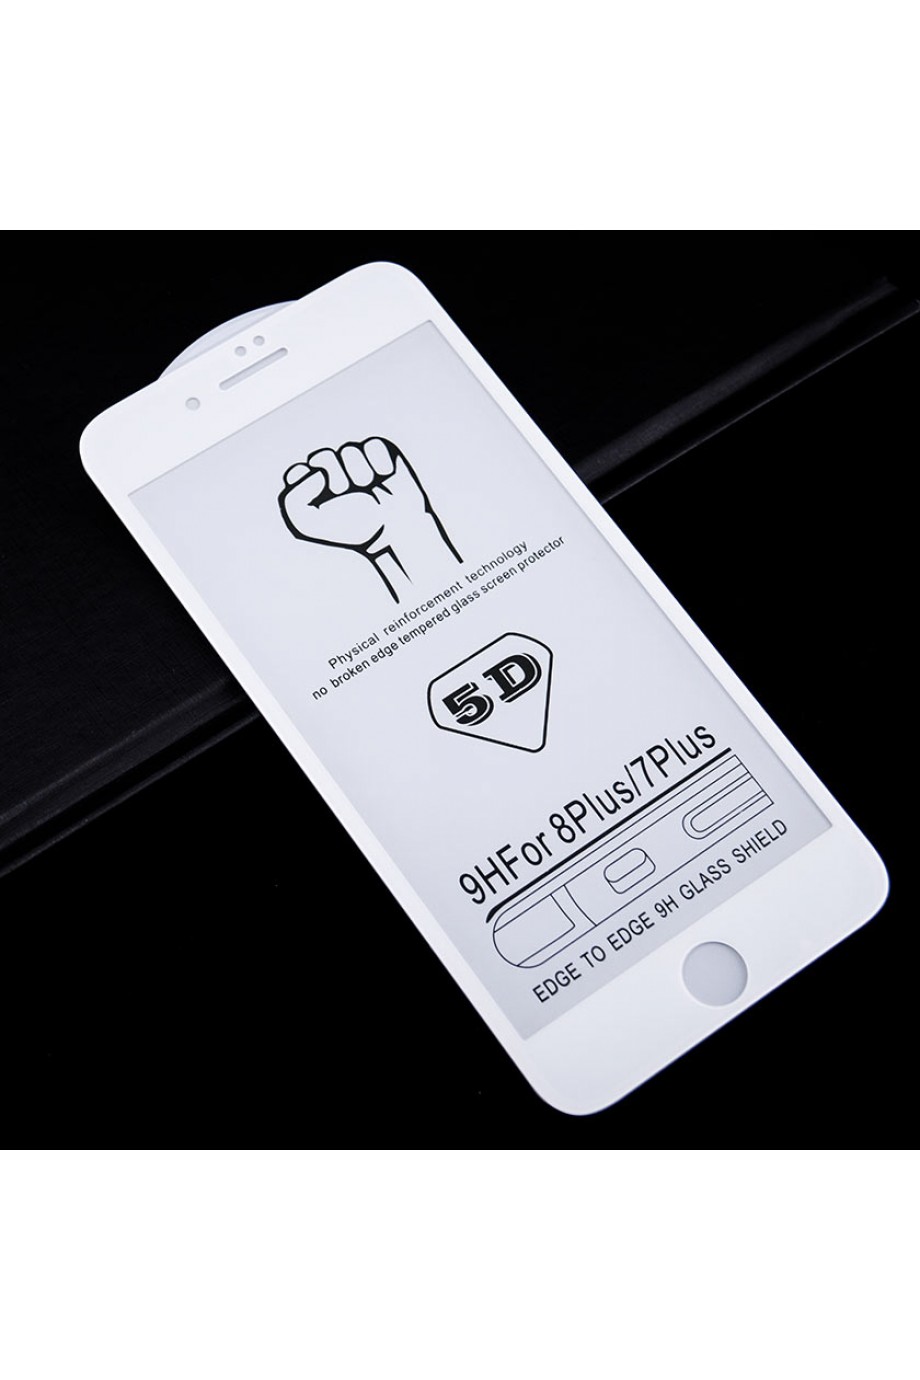 Защитное стекло 5D Mikomo для iPhone 8 Plus, белая рамка, полный клей